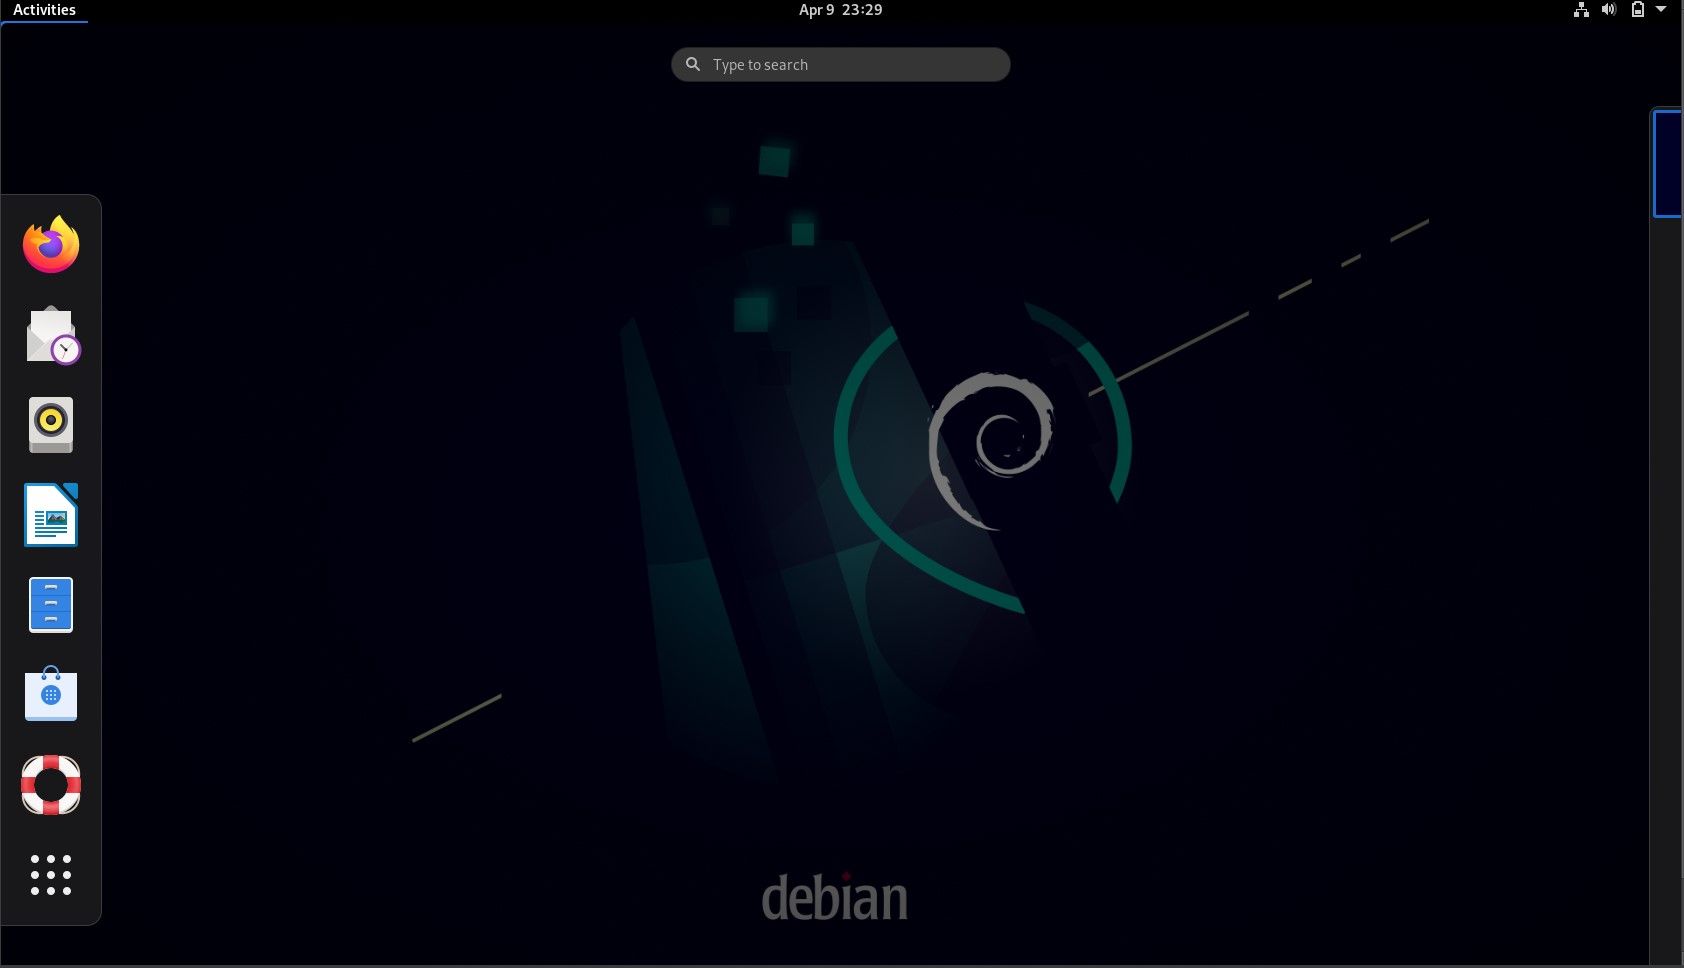 Interface de área de trabalho do Debian